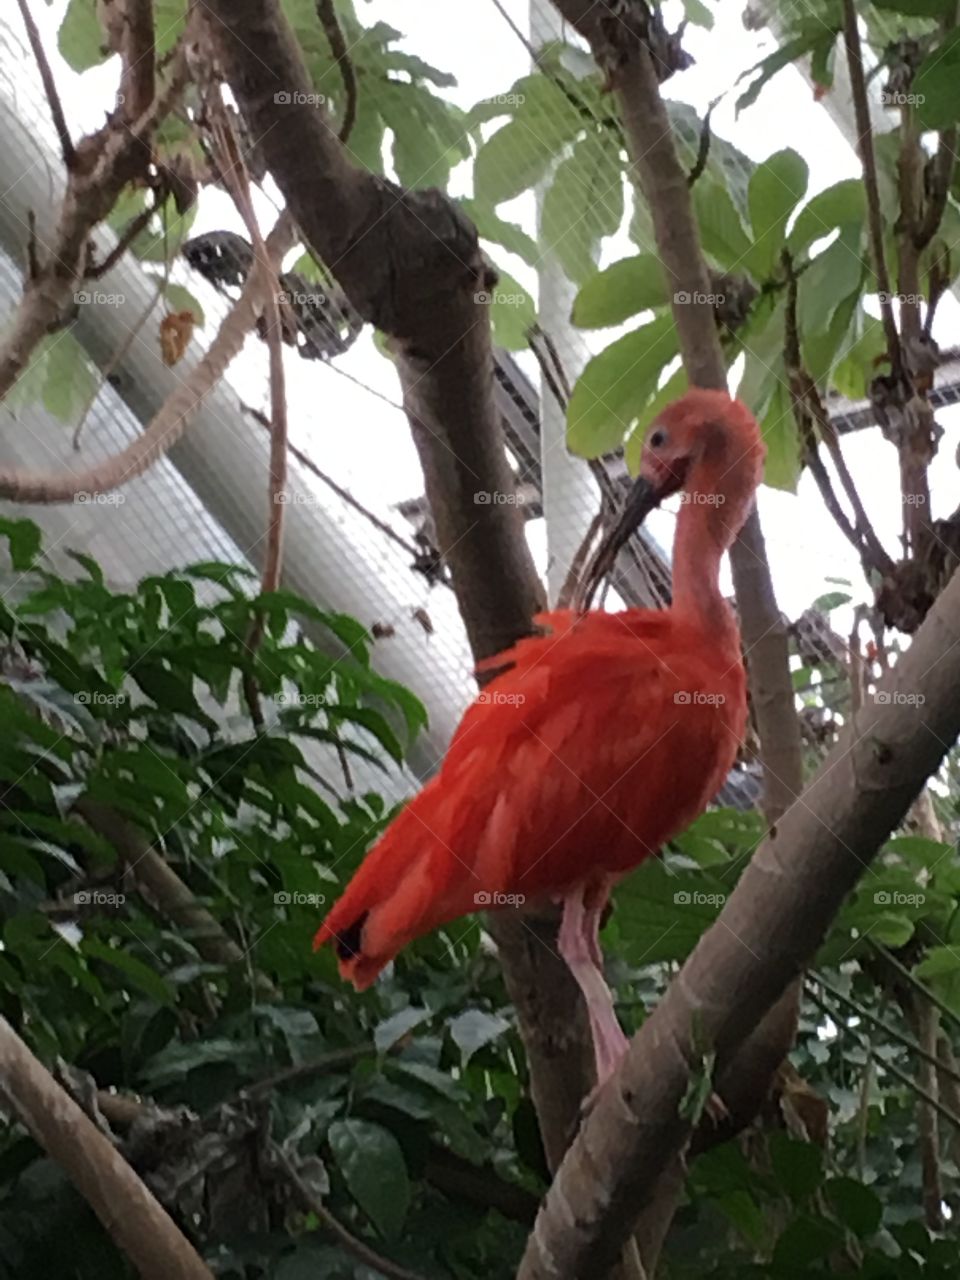 Red bird on tree branch